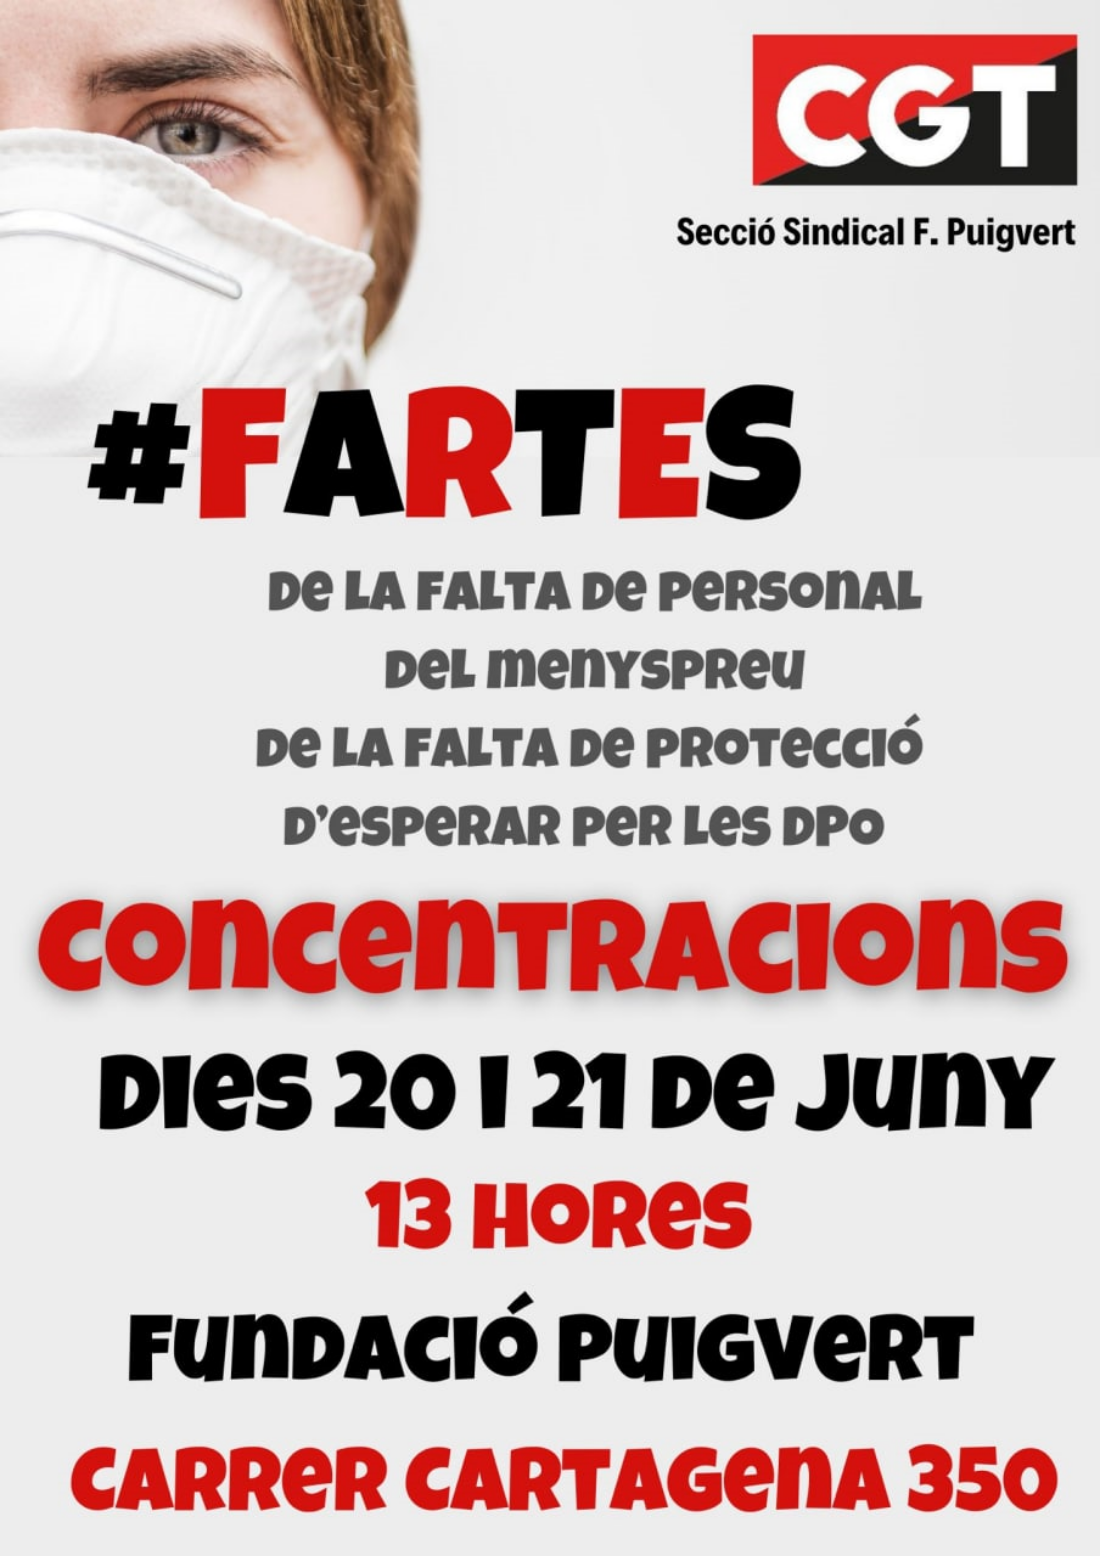 CGT Fundació Puigvert: están #FARTES